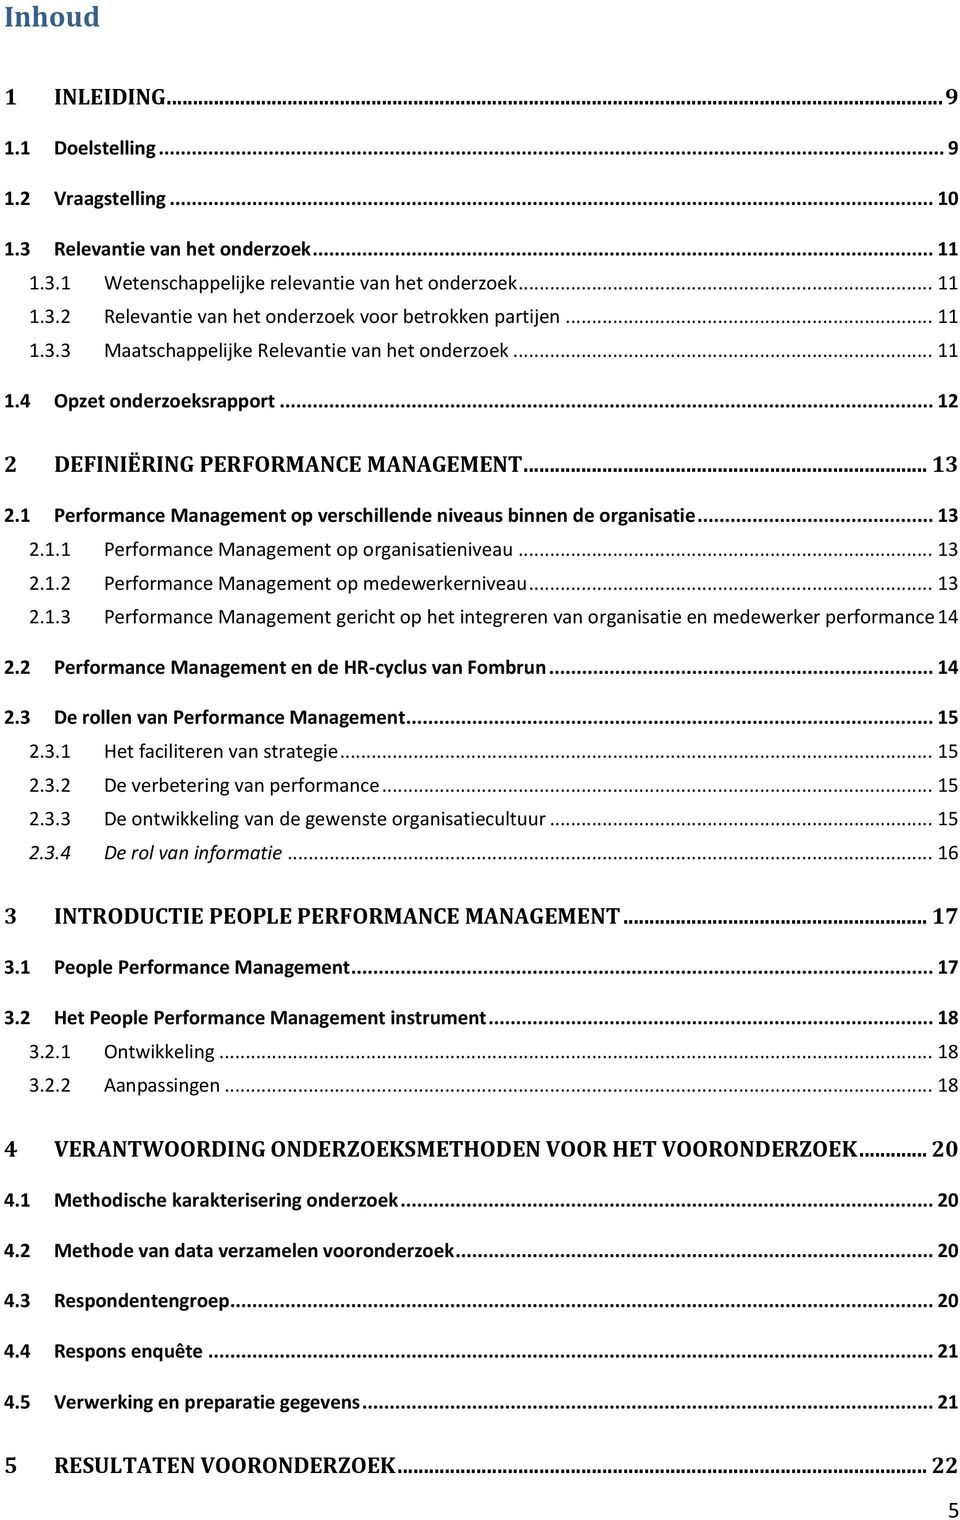 1 Performance Management op verschillende niveaus binnen de organisatie... 13 2.1.1 Performance Management op organisatieniveau... 13 2.1.2 Performance Management op medewerkerniveau... 13 2.1.3 Performance Management gericht op het integreren van organisatie en medewerker performance 14 2.